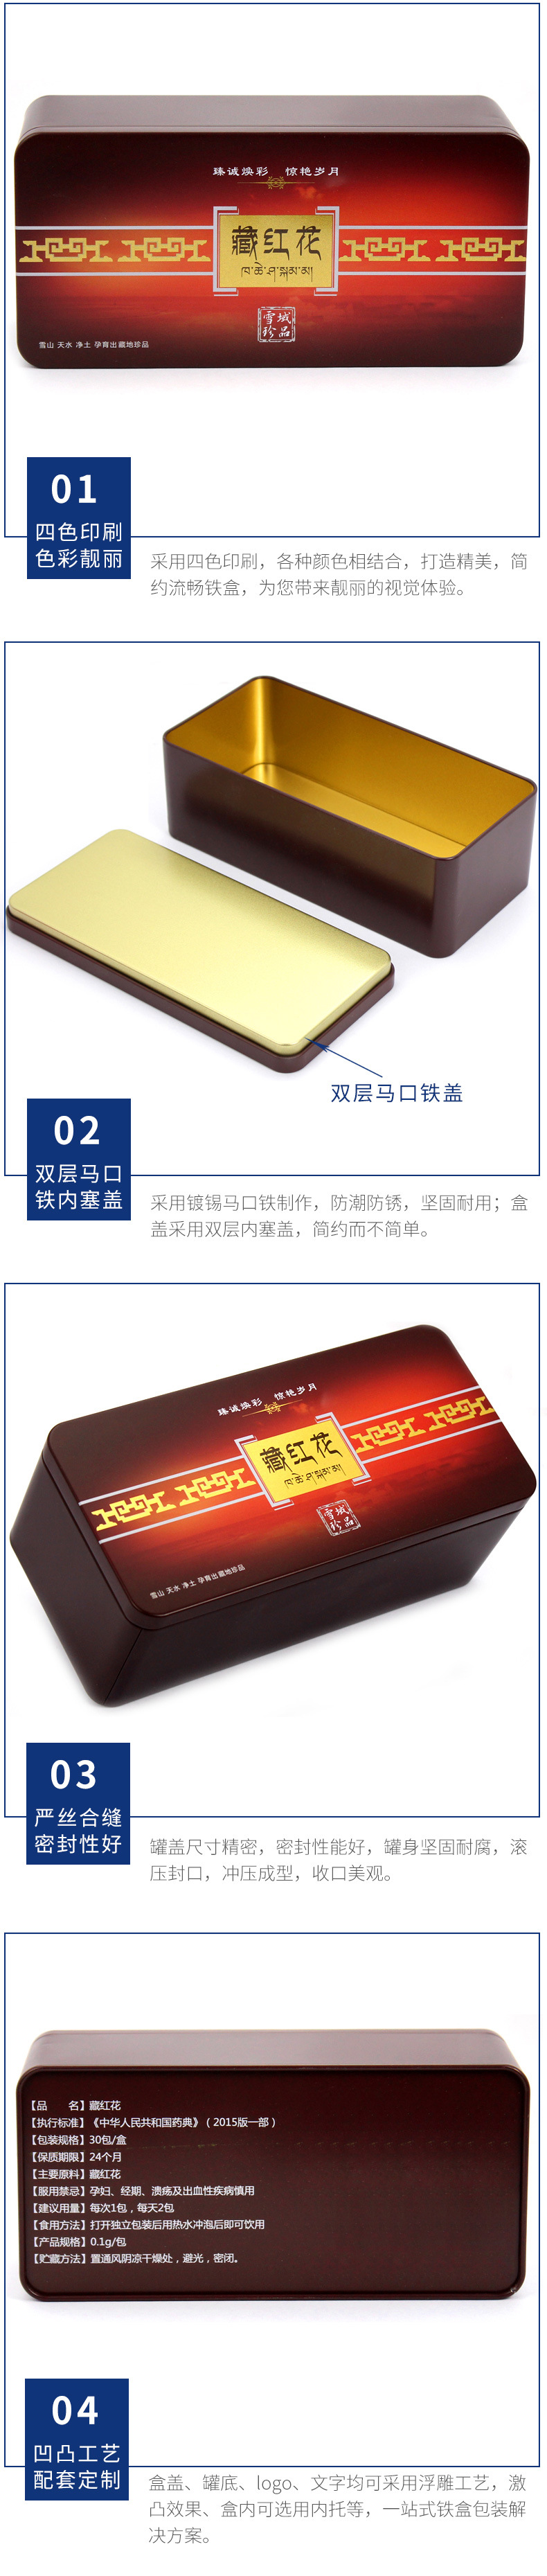 广州工厂生产藏红花铁盒 密封西红花包装盒 保健品铁罐铁盒设计示例图14